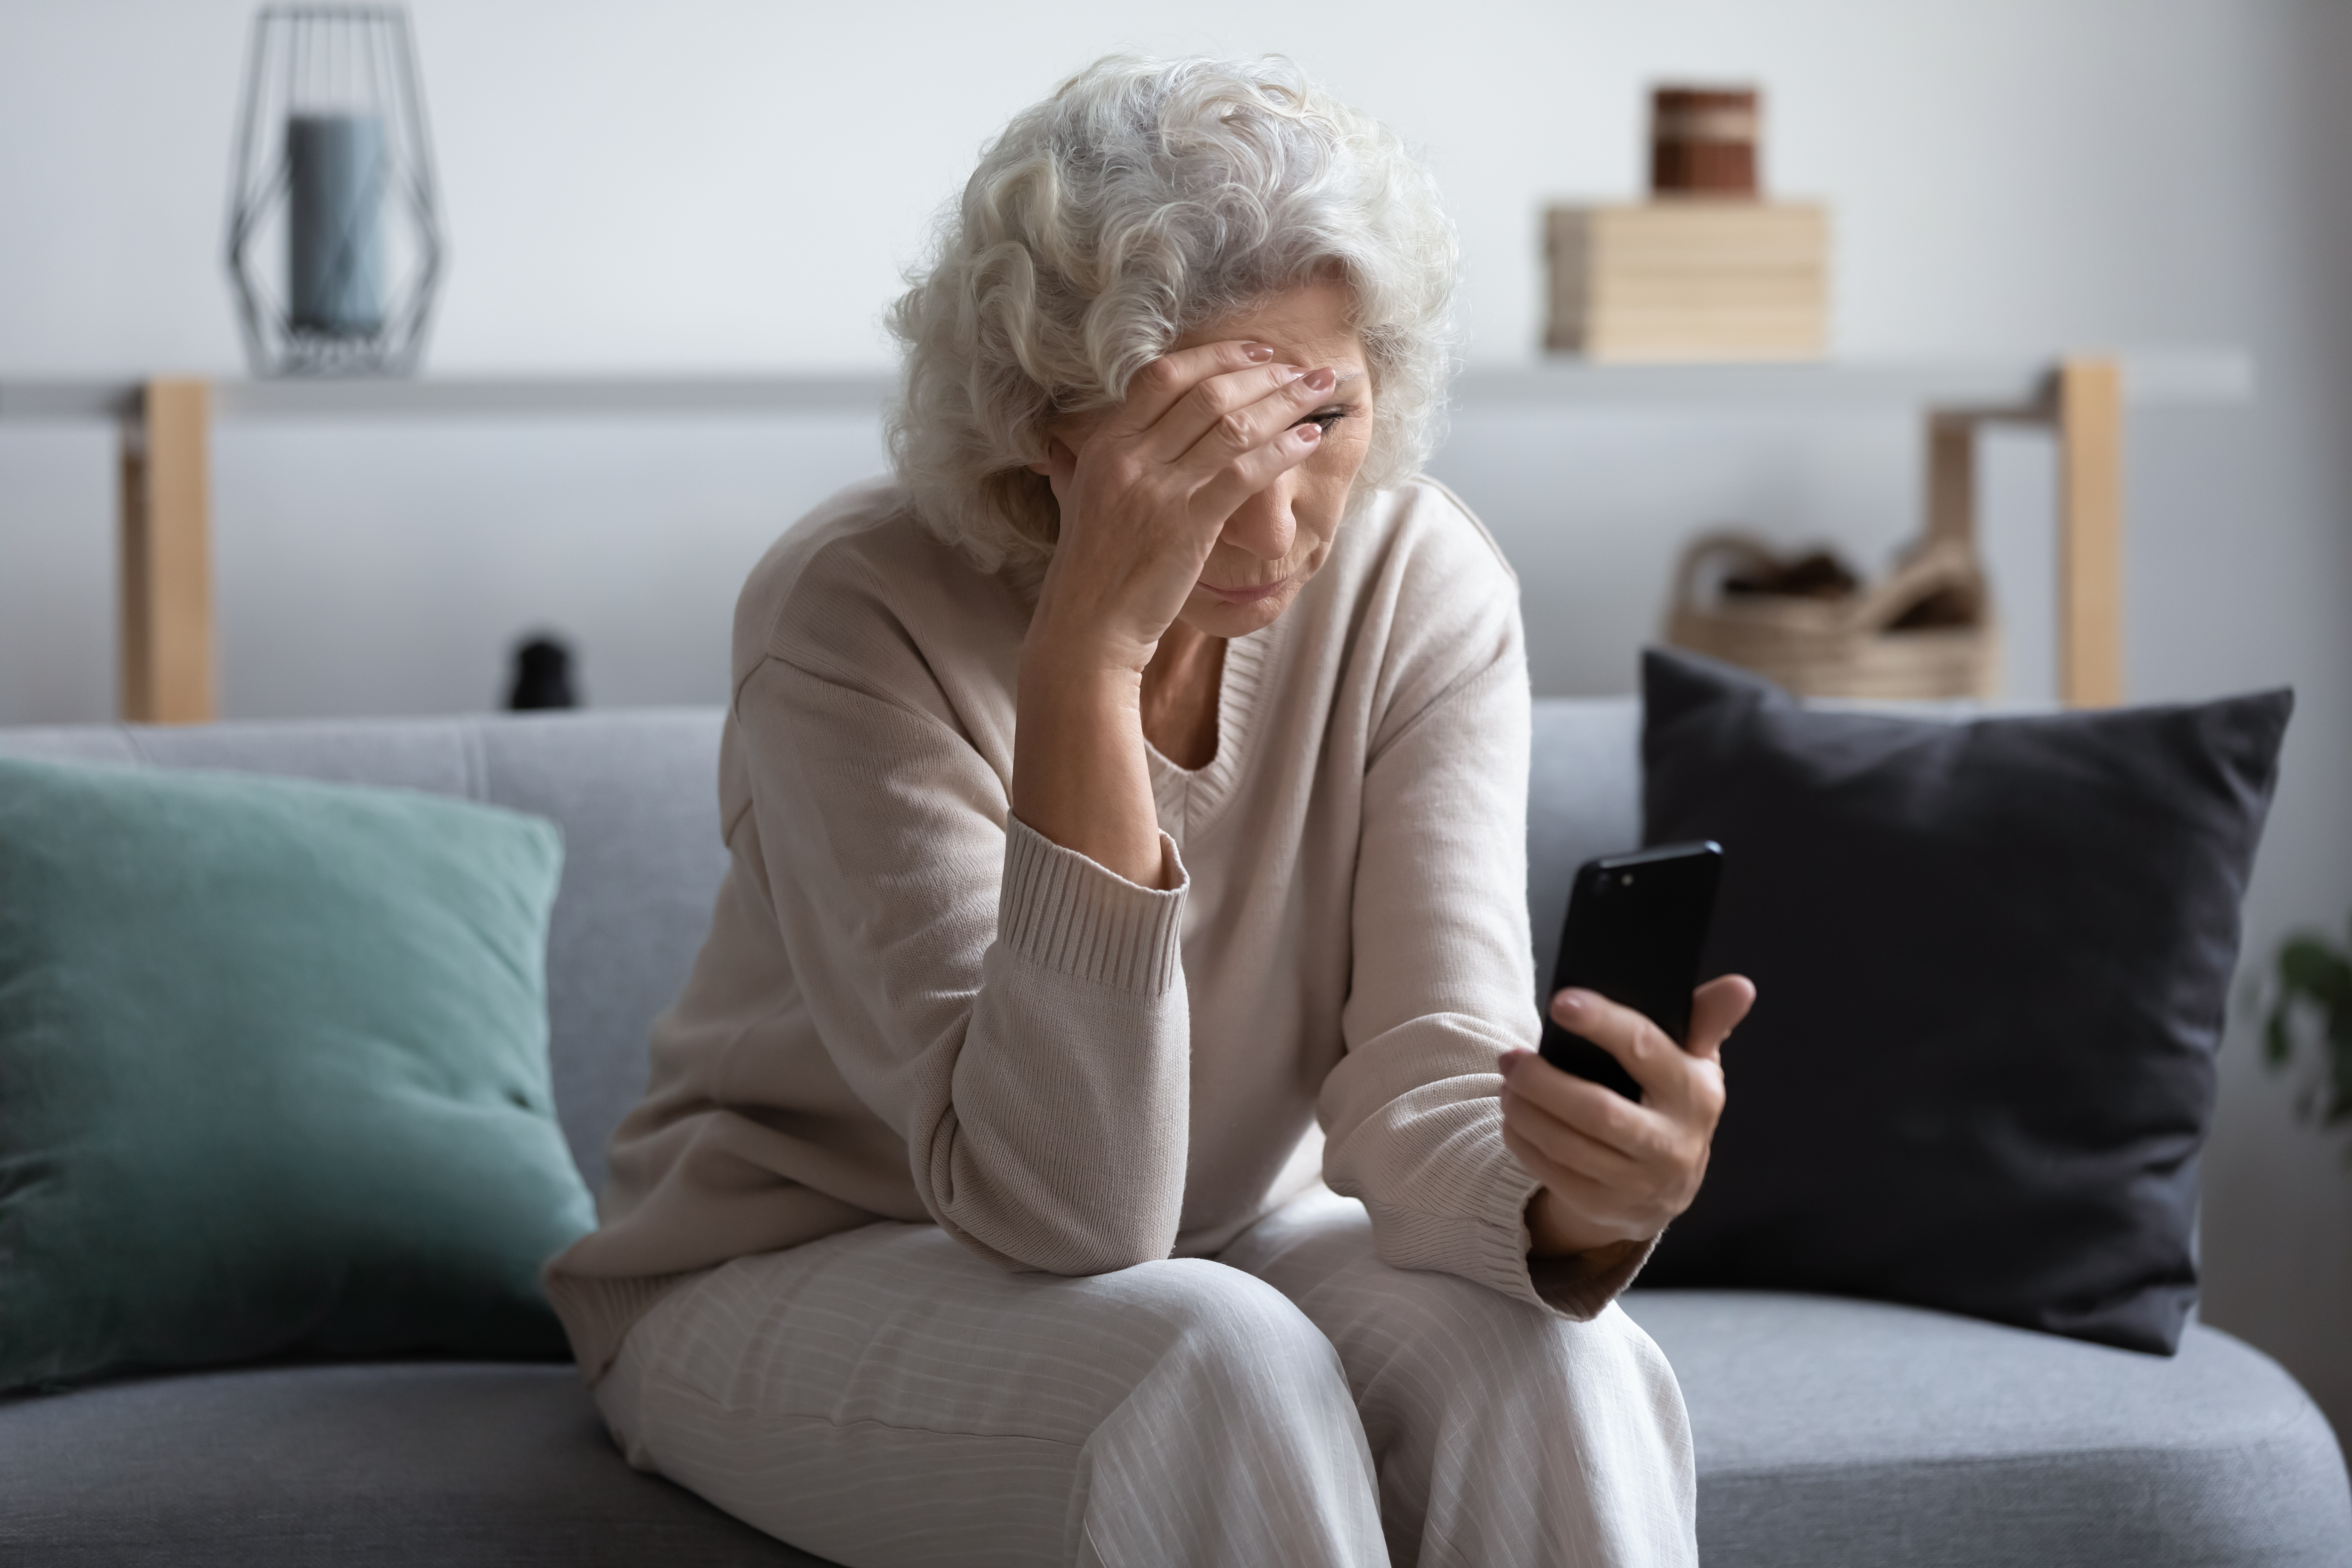 Une femme stressée qui regarde son téléphone | Source : Shutterstock